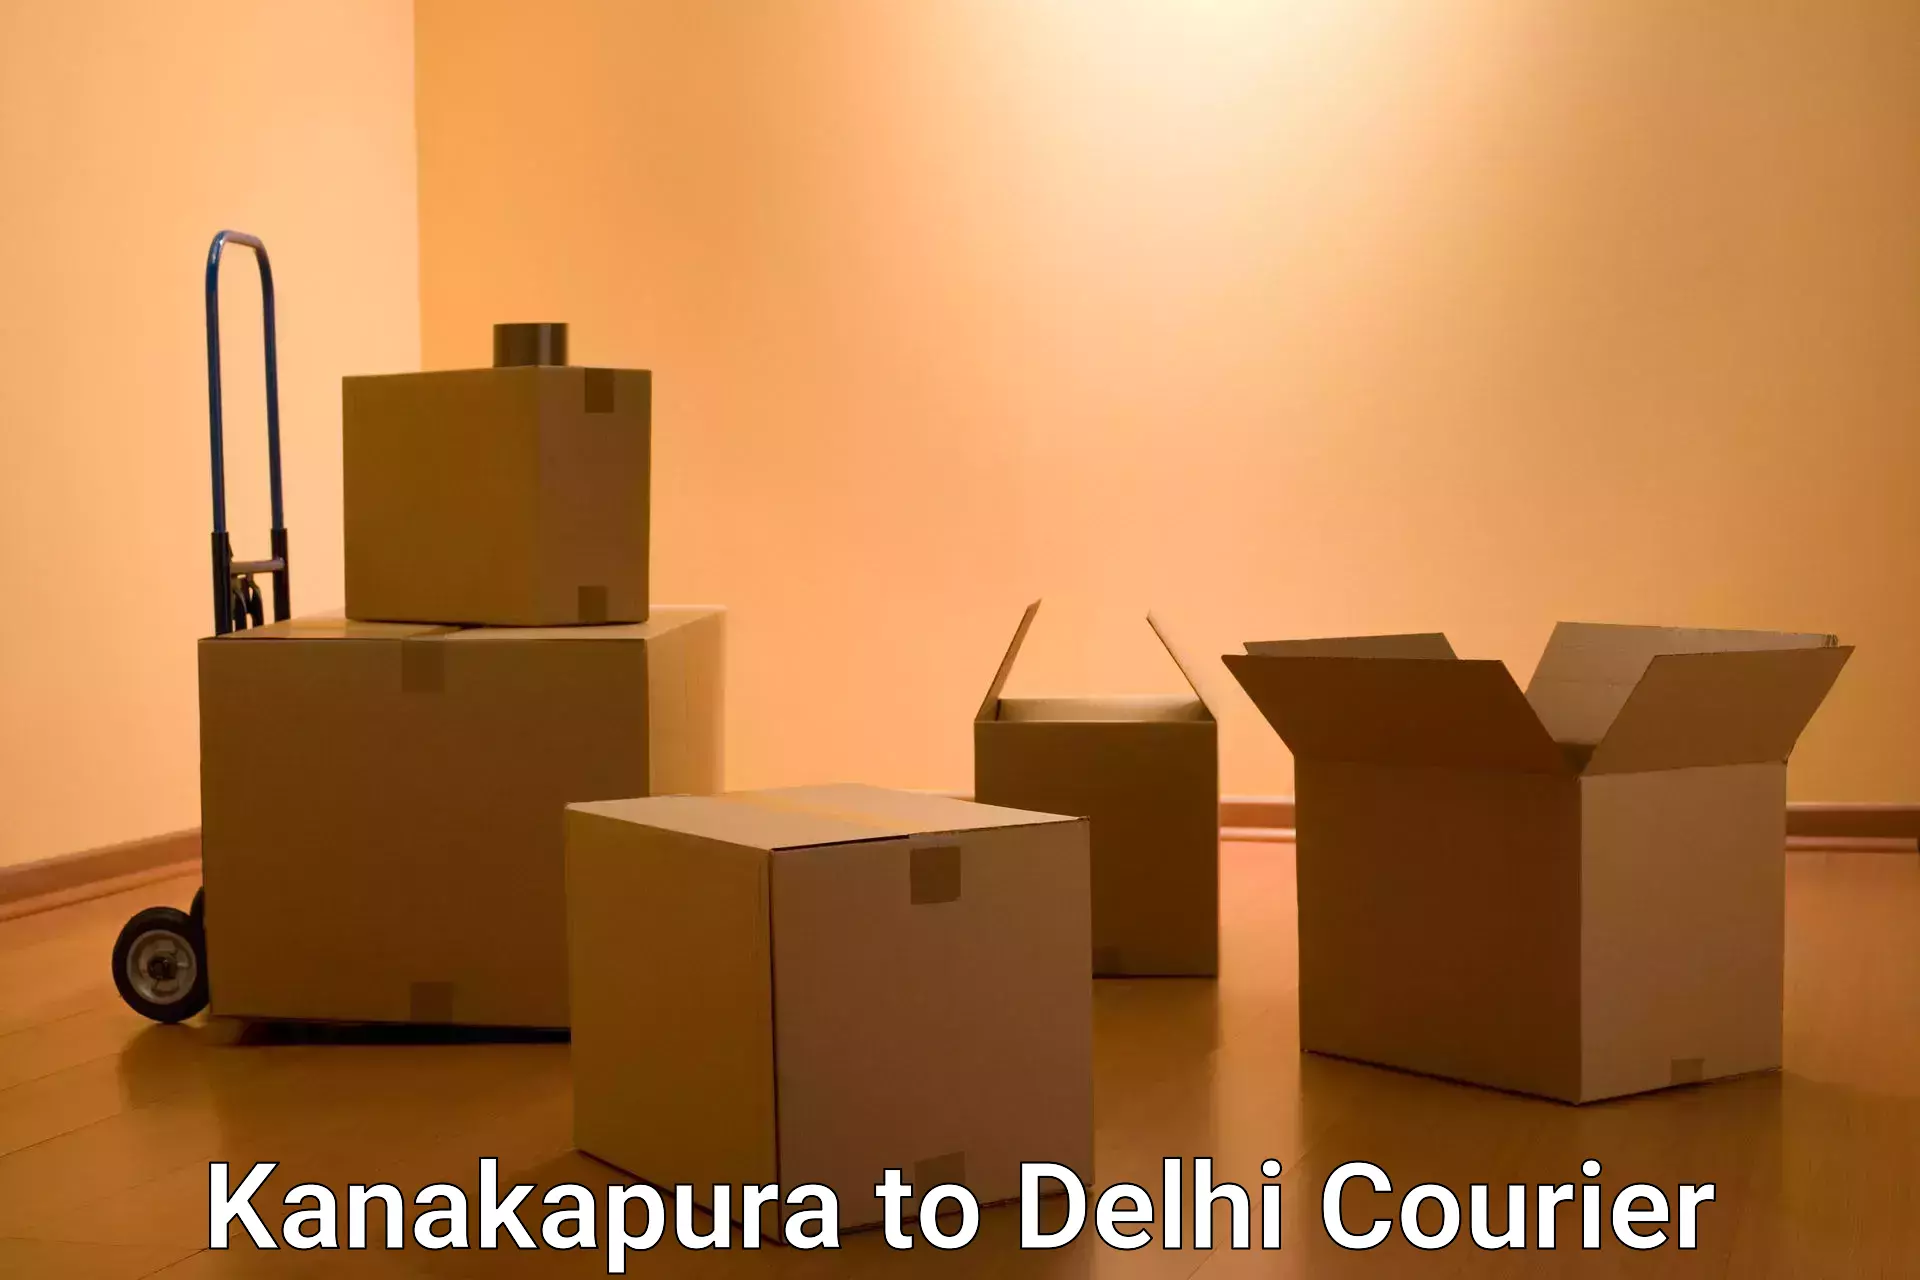 24/7 courier service Kanakapura to NIT Delhi